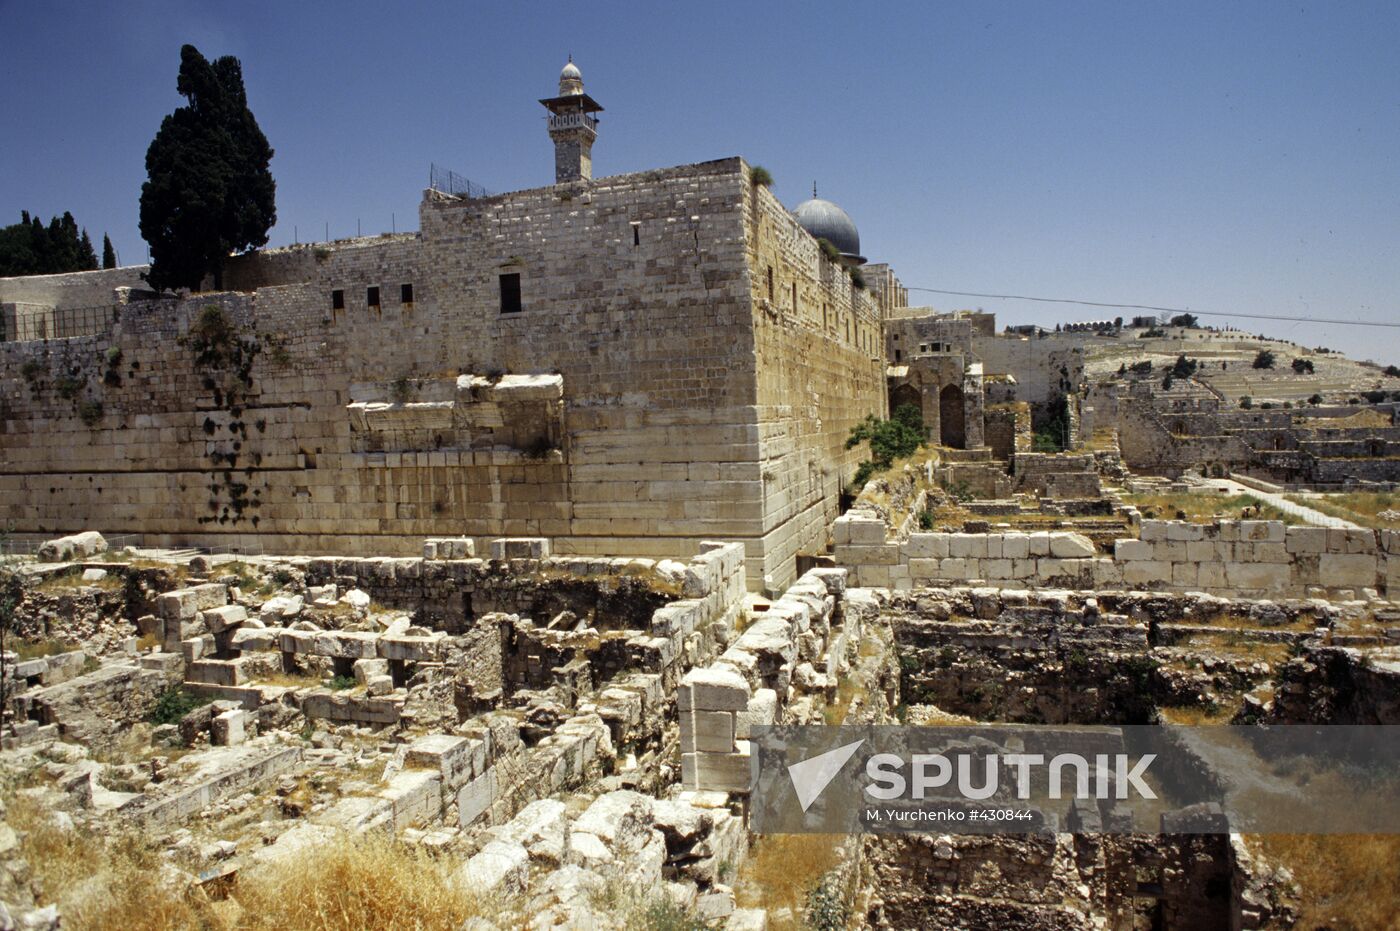 Solomon's Temple in ruins